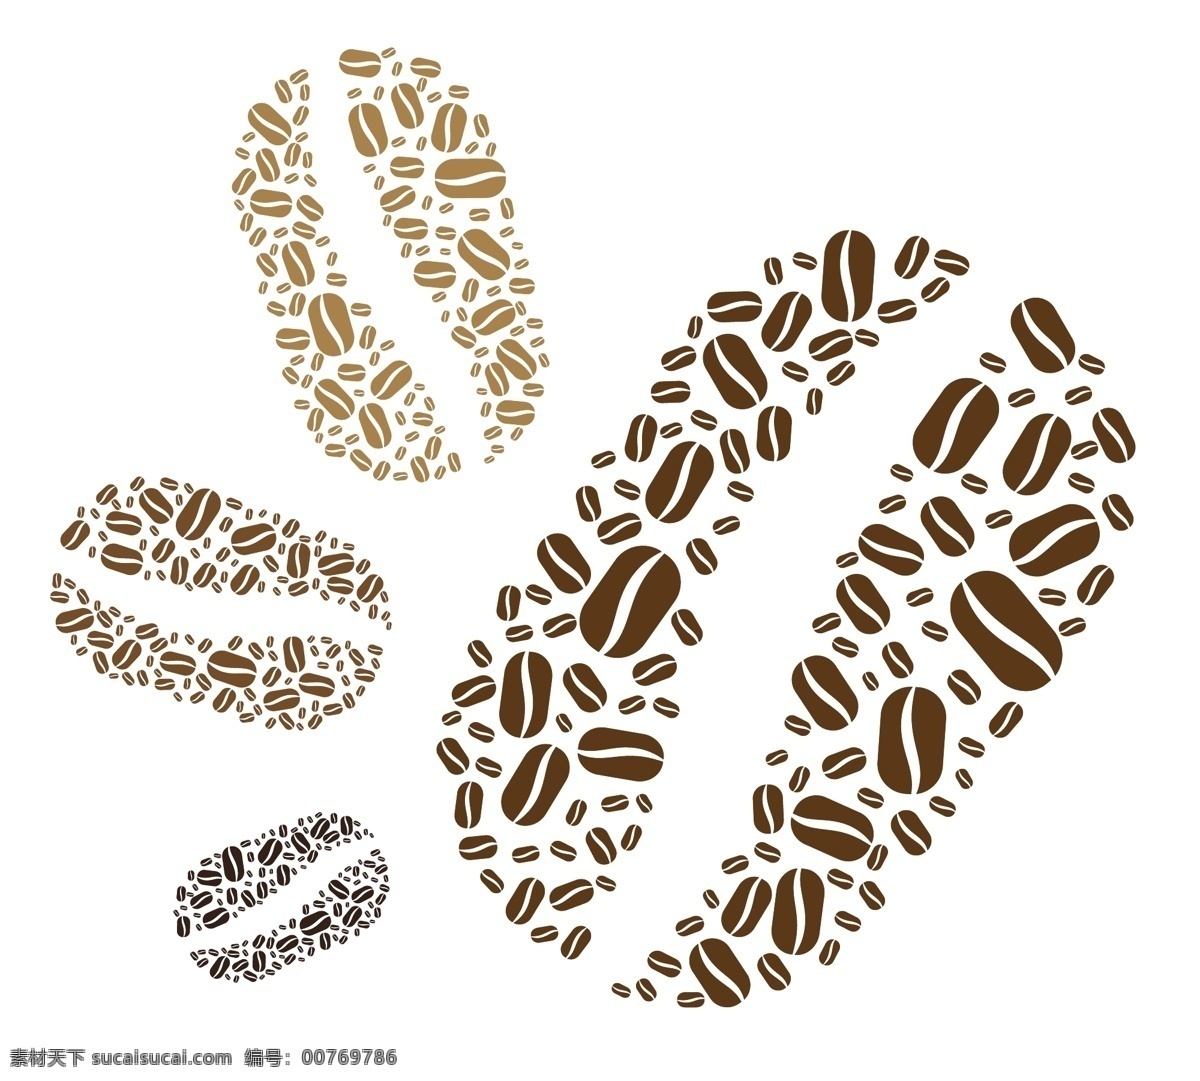 咖啡豆 咖啡 咖啡杯 咖啡设计 咖啡手绘 coffee 咖啡图标 咖啡时间 咖啡馆 咖啡标志 咖啡店 咖啡元素 咖啡店图标 logo 咖啡商标 餐饮美食 生活百科